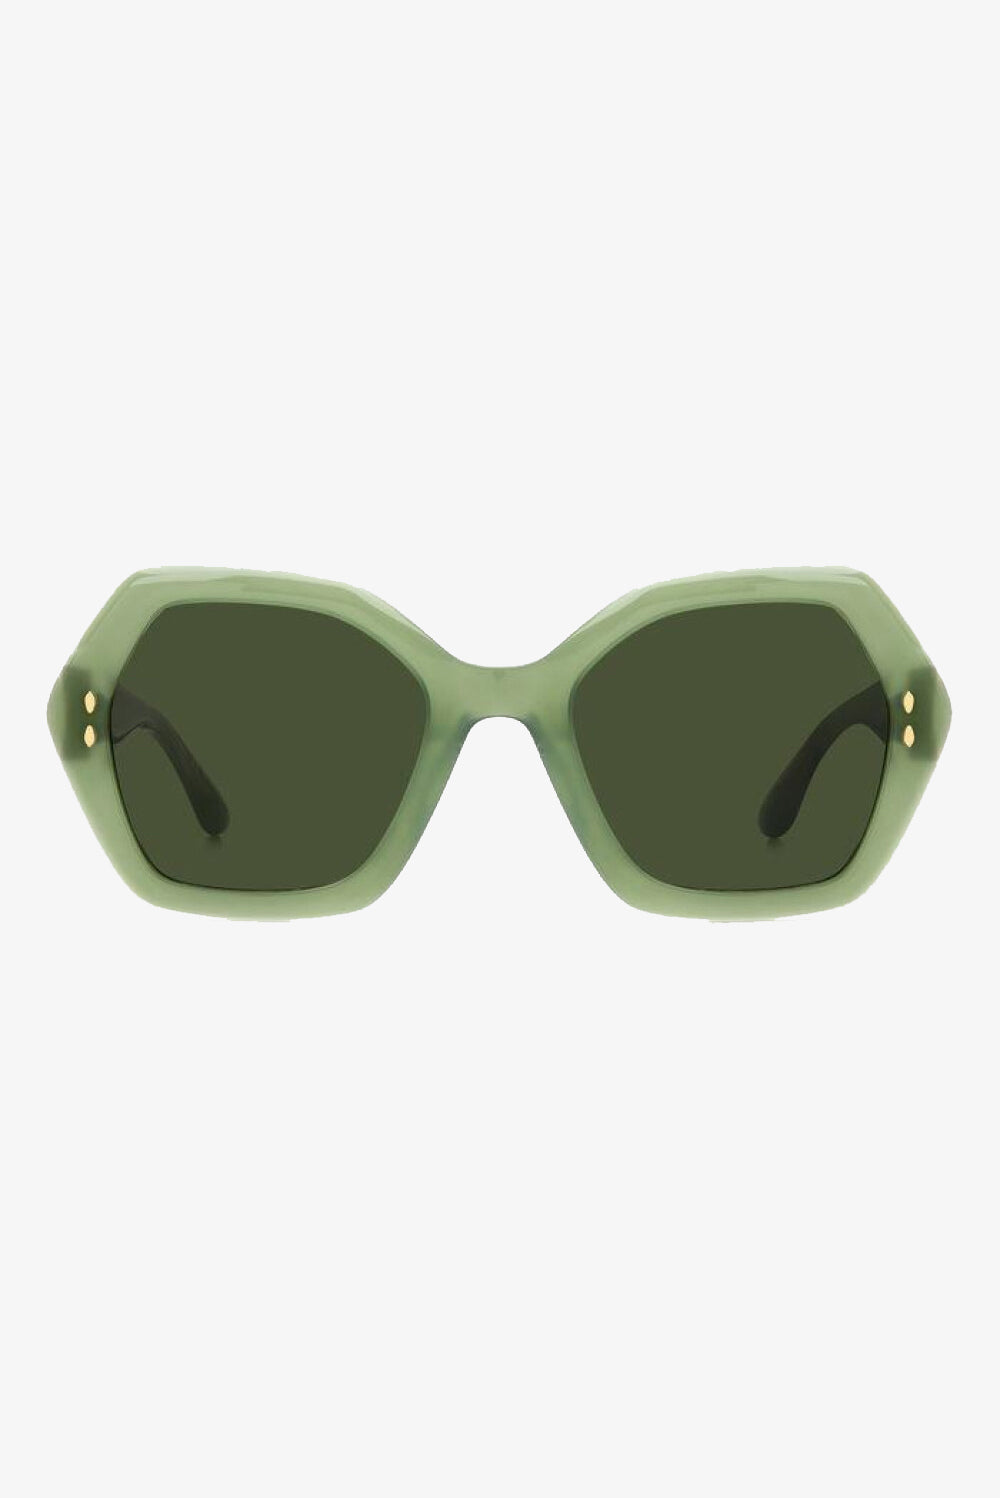 Isabel Marant Sunglasses Green Sunglasses